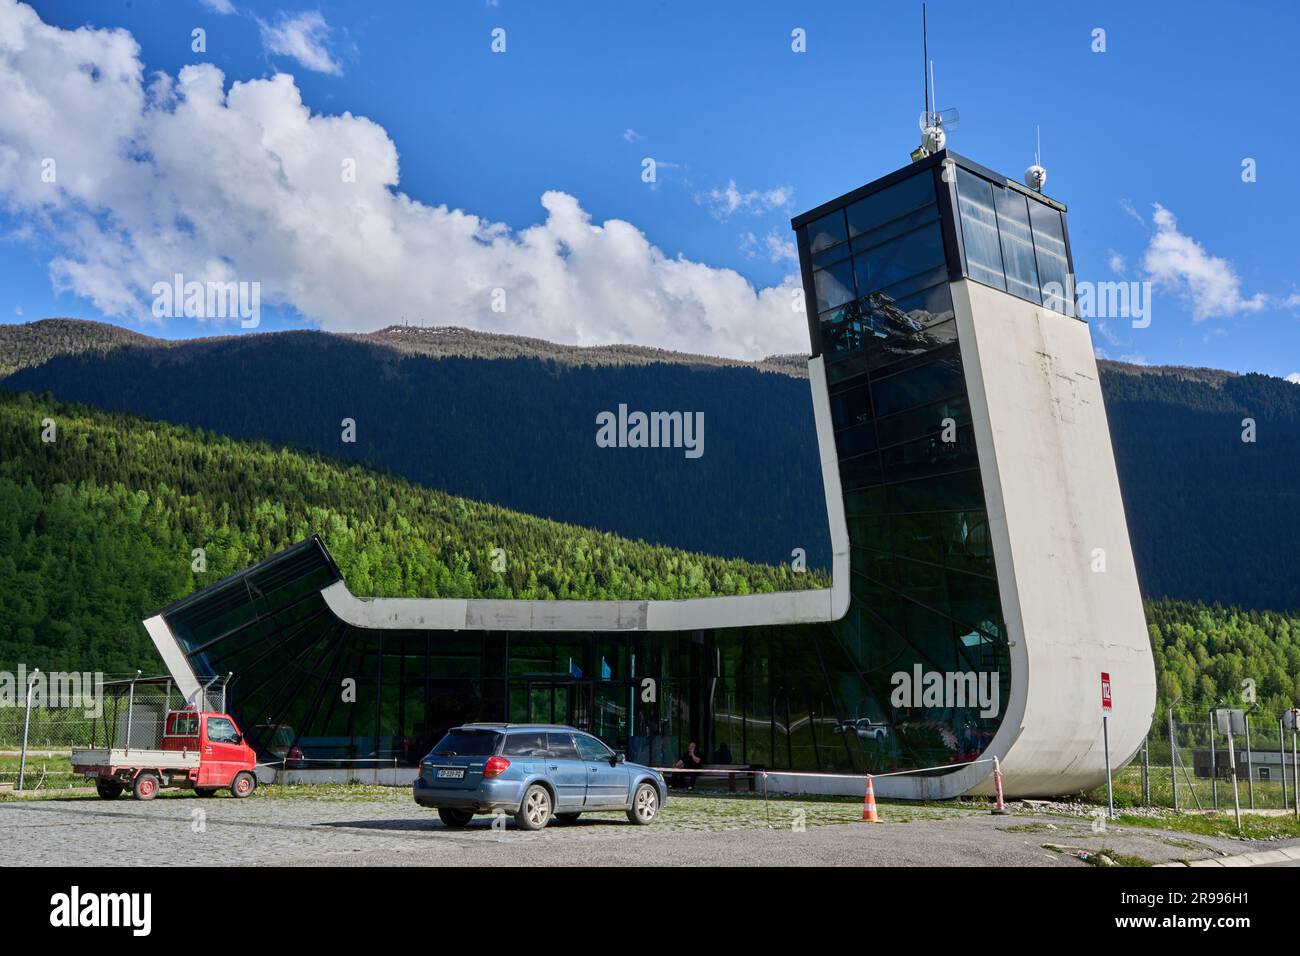 Königin-Tamar-Flughafen, Flughafen von Mestia, moderne Sichtbetonarchitektur, Ober-Swanetien, Hoher Kaukasus, Georgien Banque D'Images